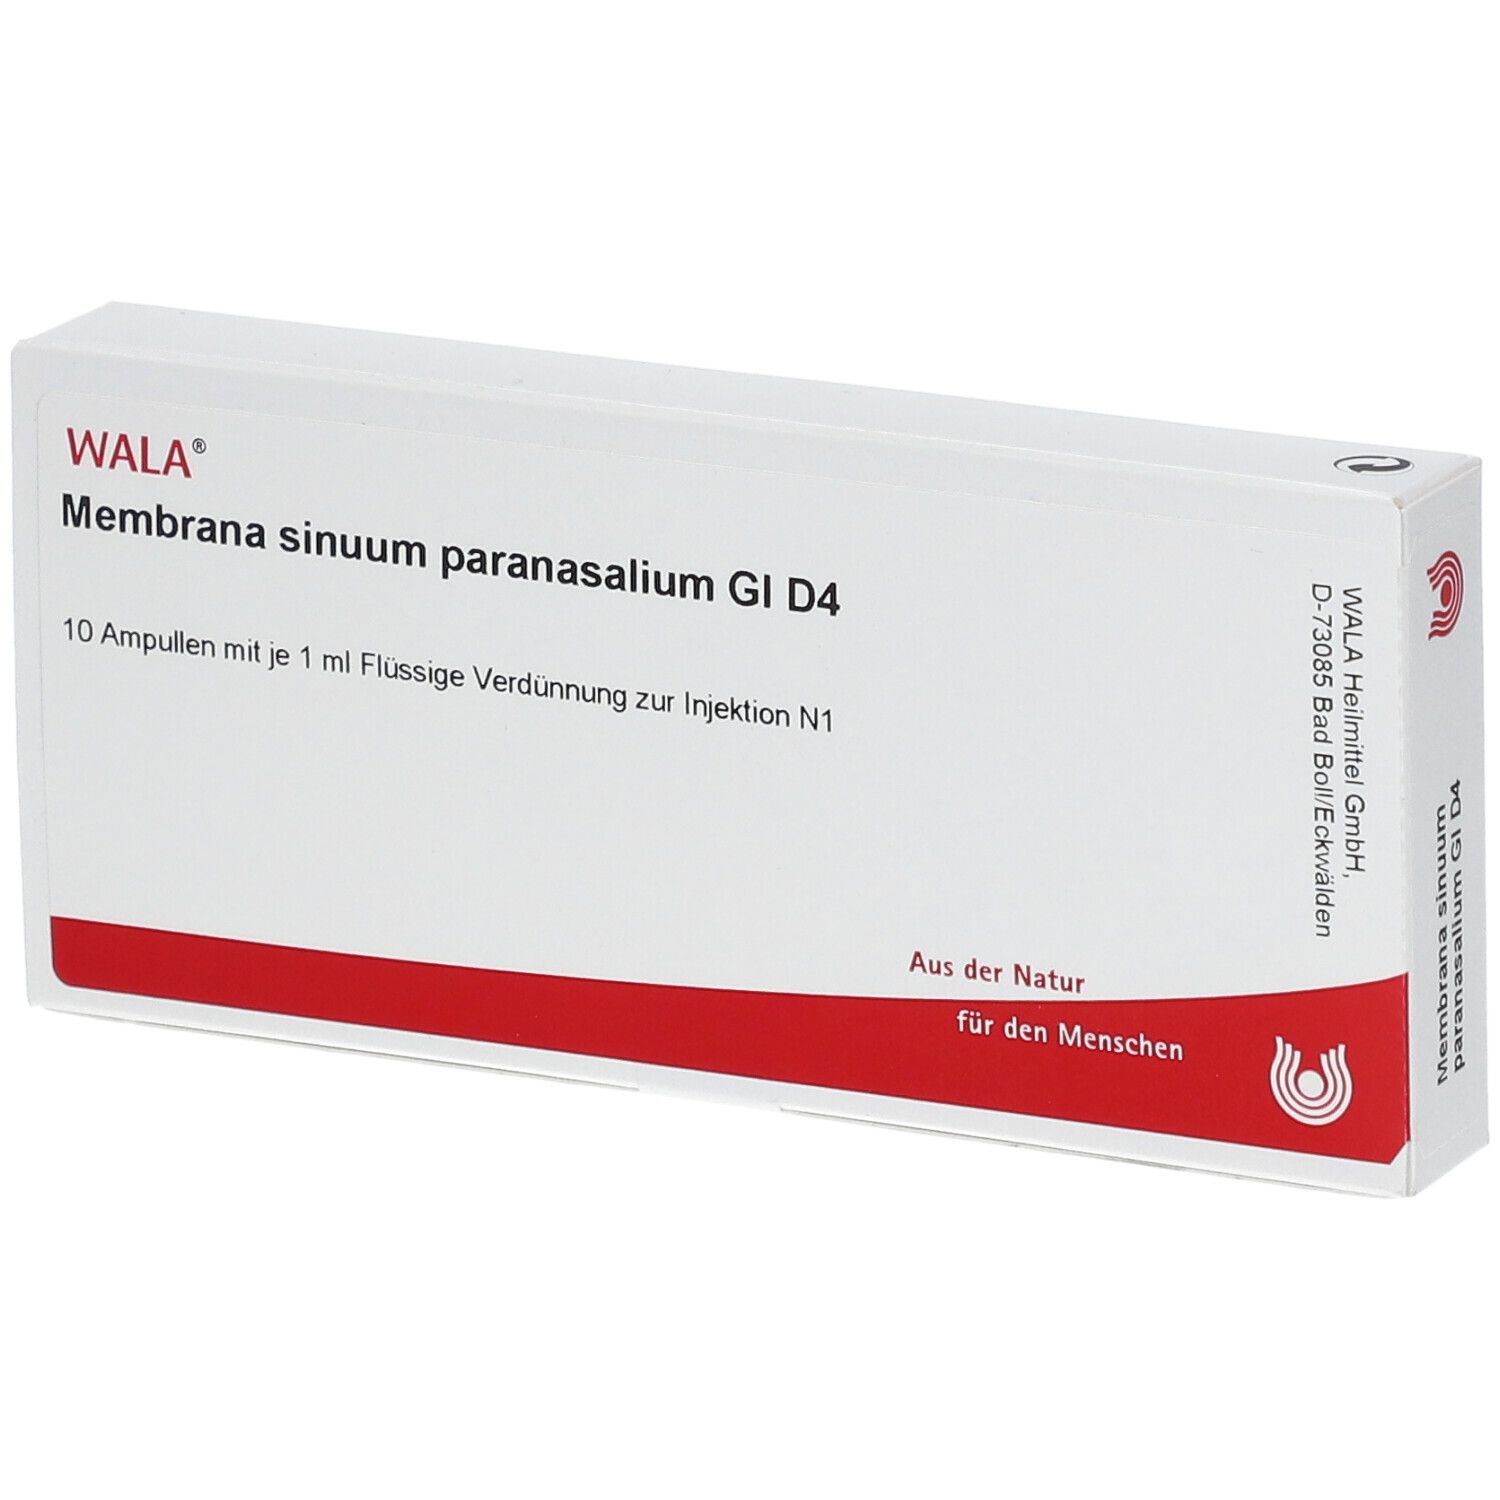 Wala® Membrana sinuum paranasalium Gl D 4